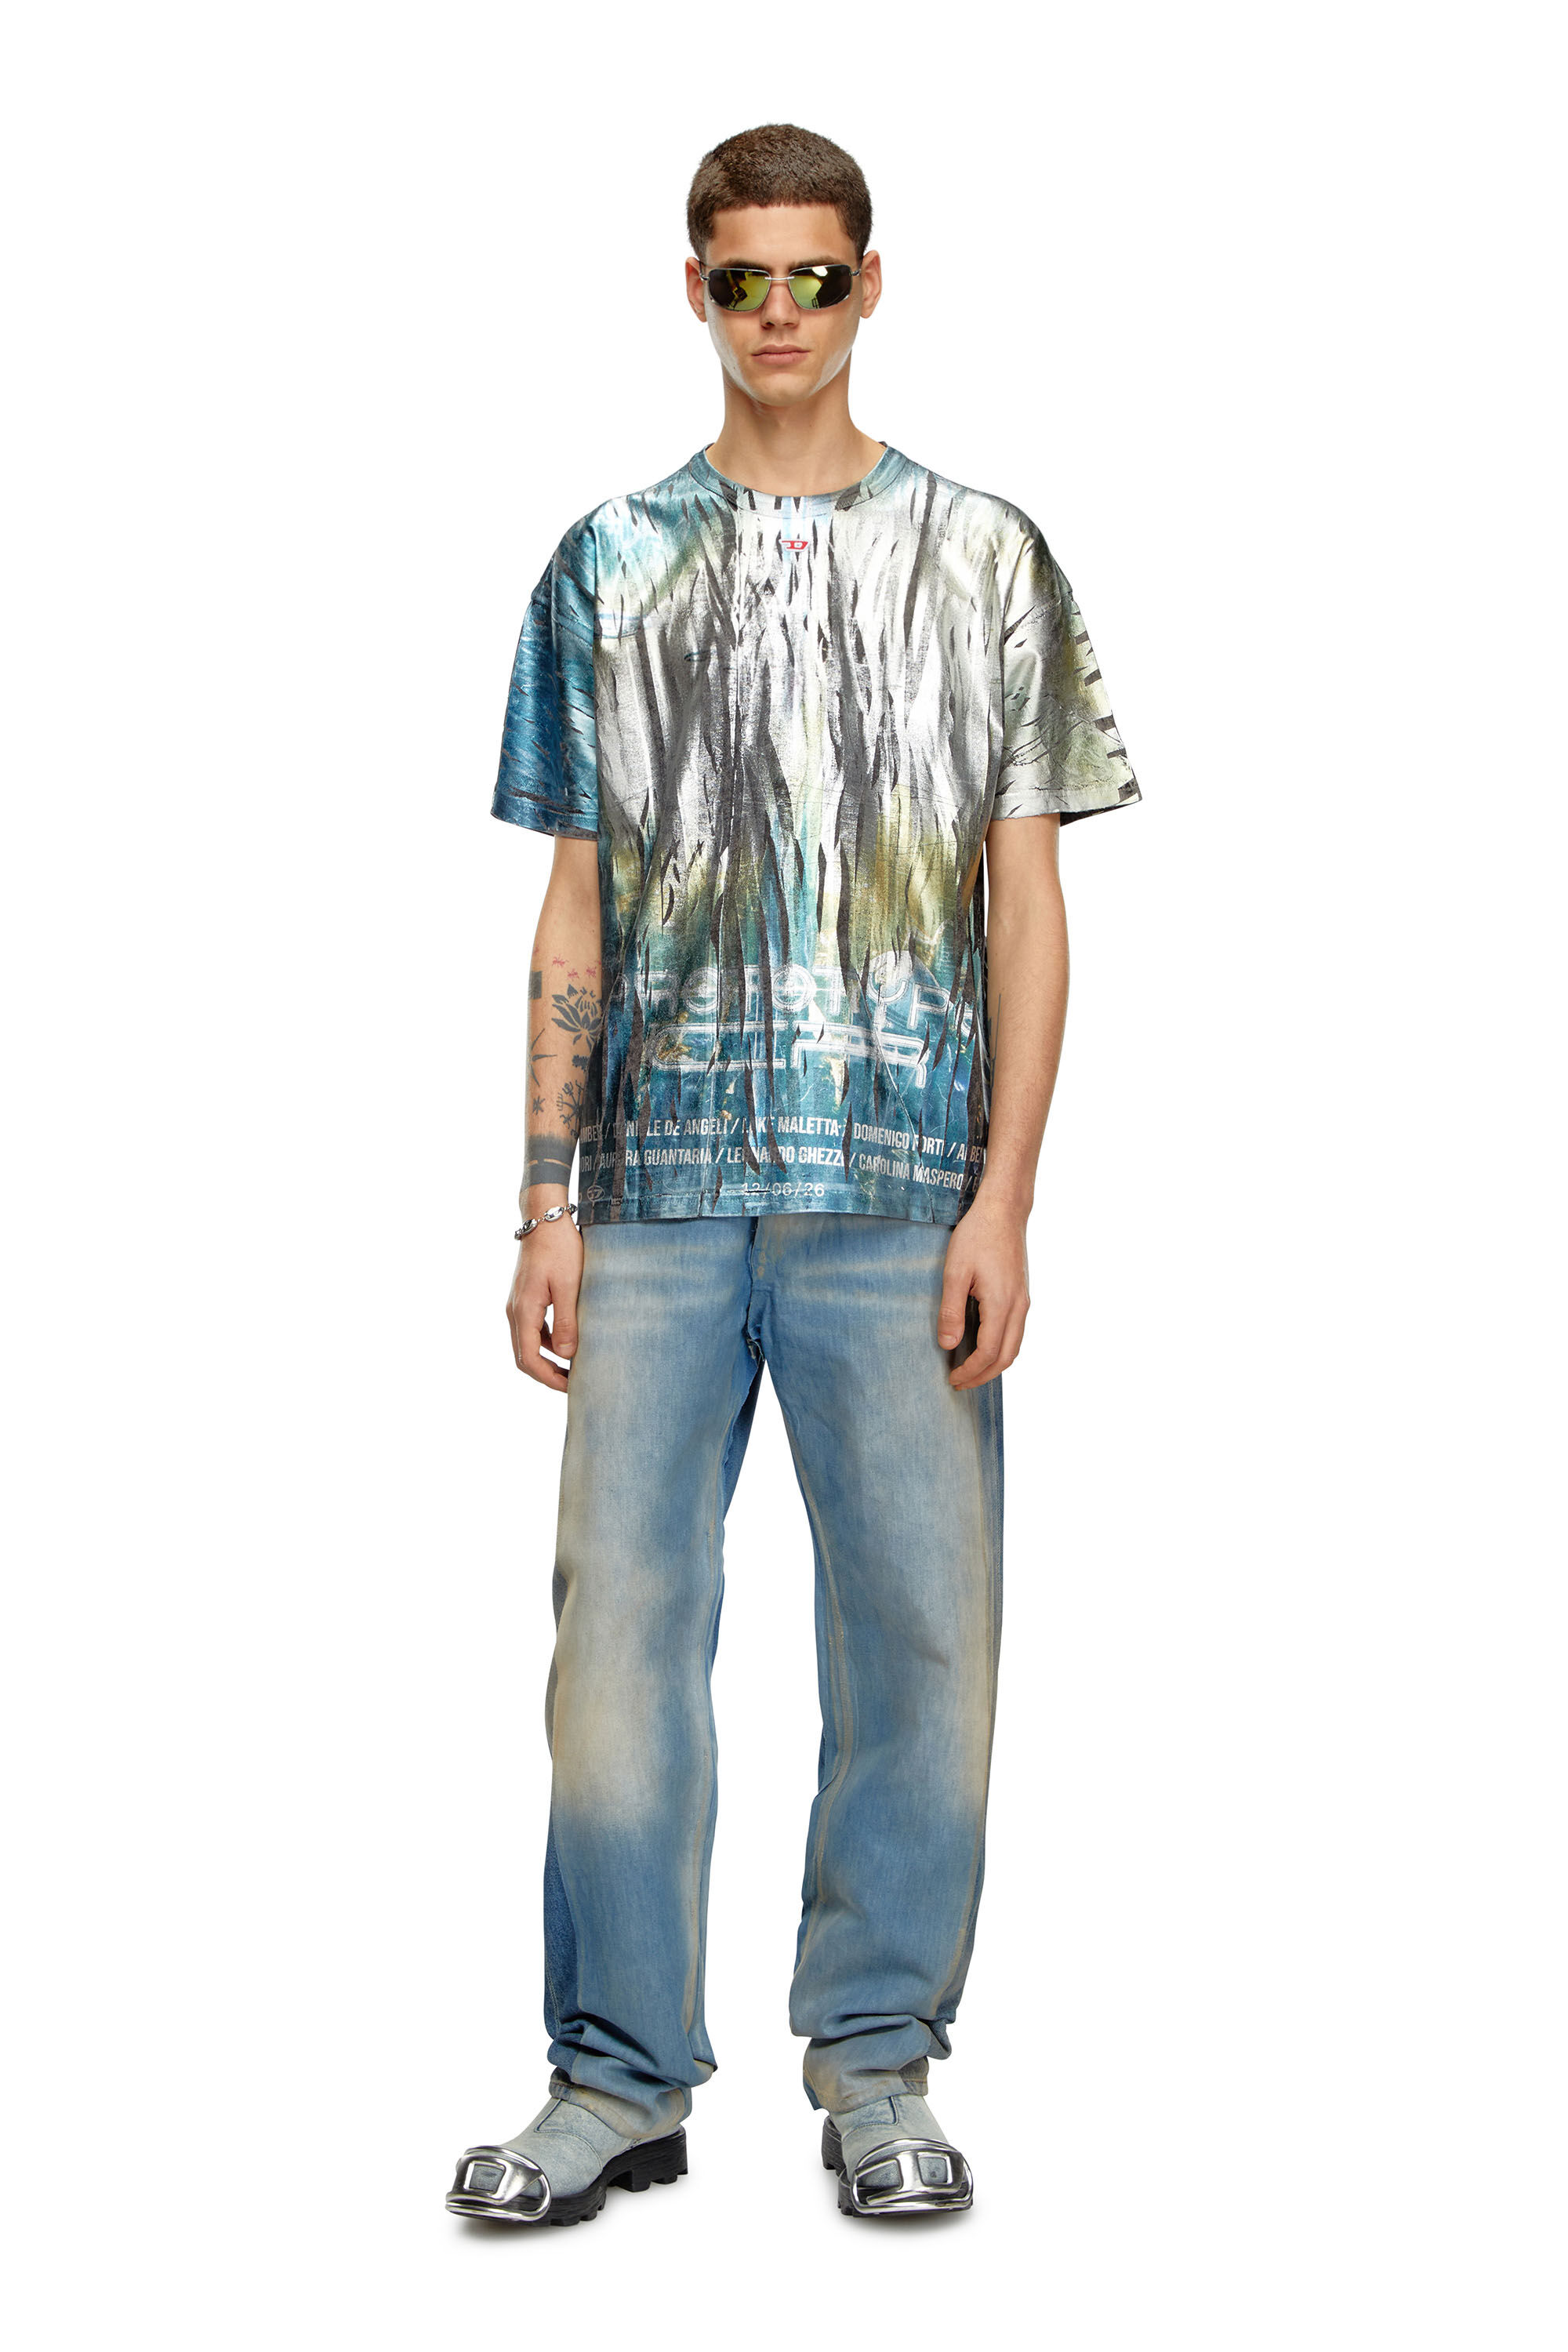 Diesel - T-BORD-Q1, Homme T-shirt avec traitement froissé in Polychrome - Image 1